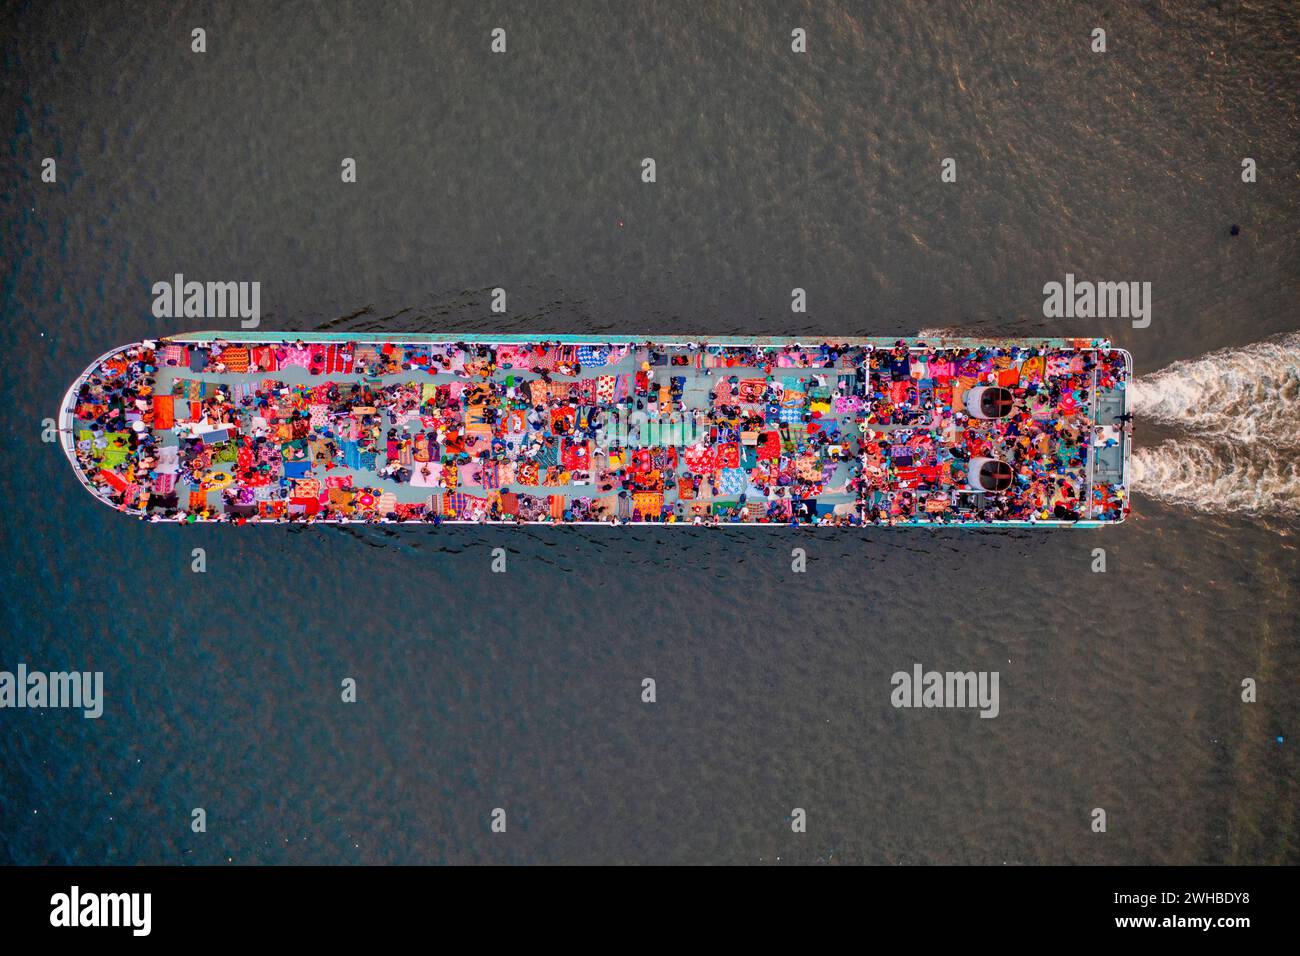 Vue aérienne des personnes à bord d'un navire à passagers le long de la rivière Buriganga, Dhaka, Bangladesh. Banque D'Images